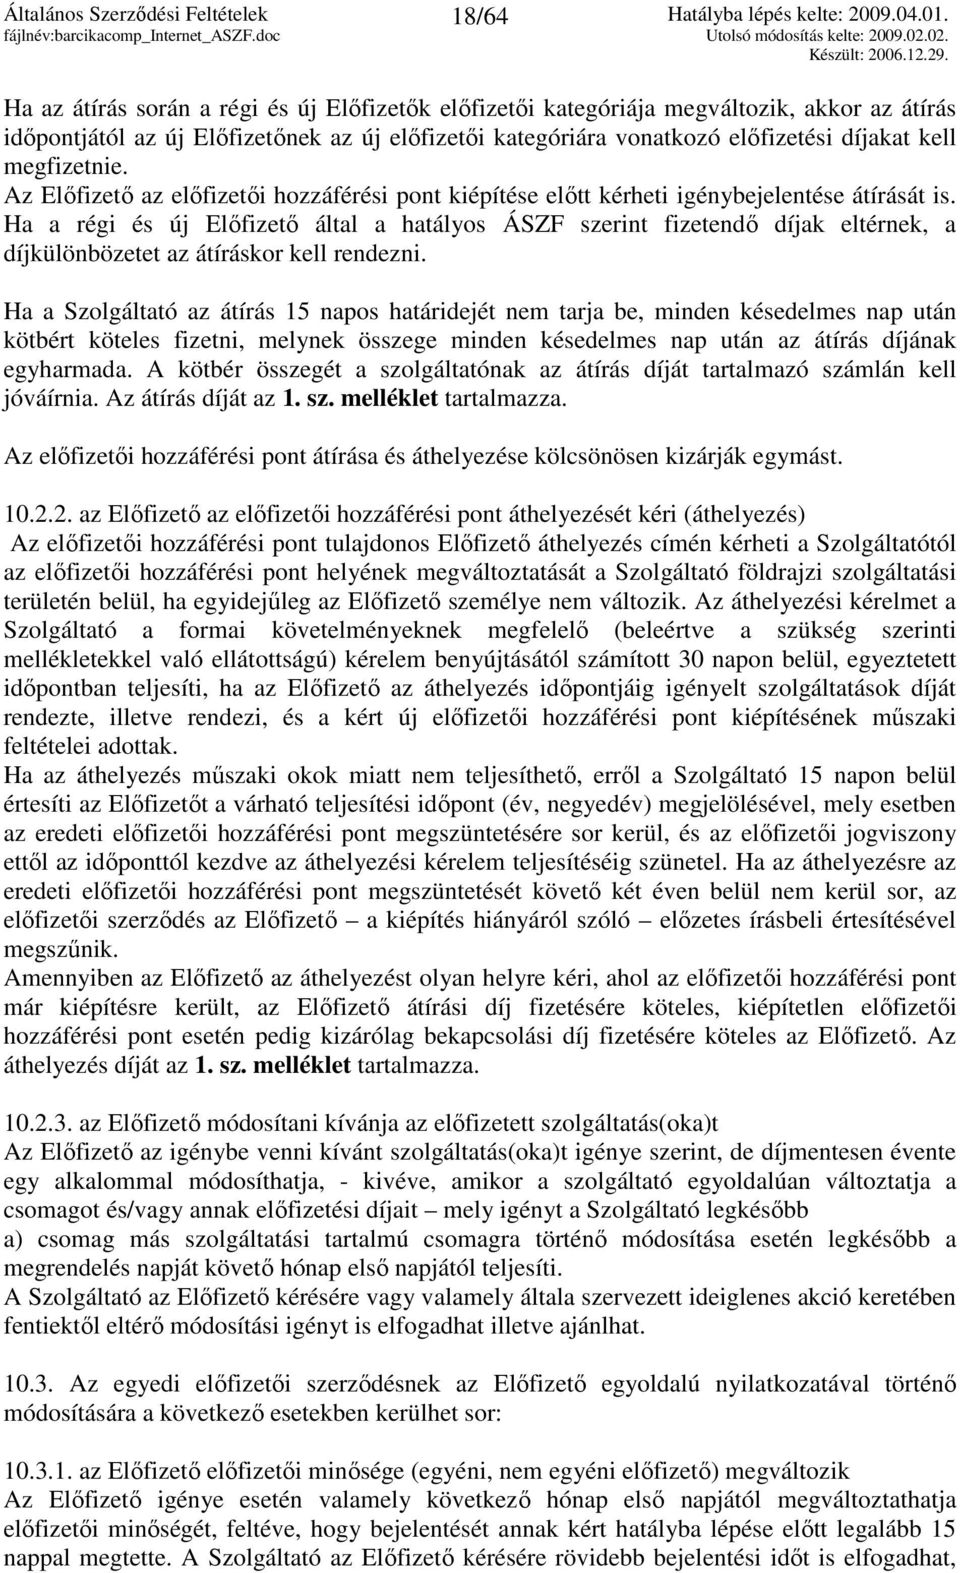 Ha a régi és új Elıfizetı által a hatályos ÁSZF szerint fizetendı díjak eltérnek, a díjkülönbözetet az átíráskor kell rendezni.